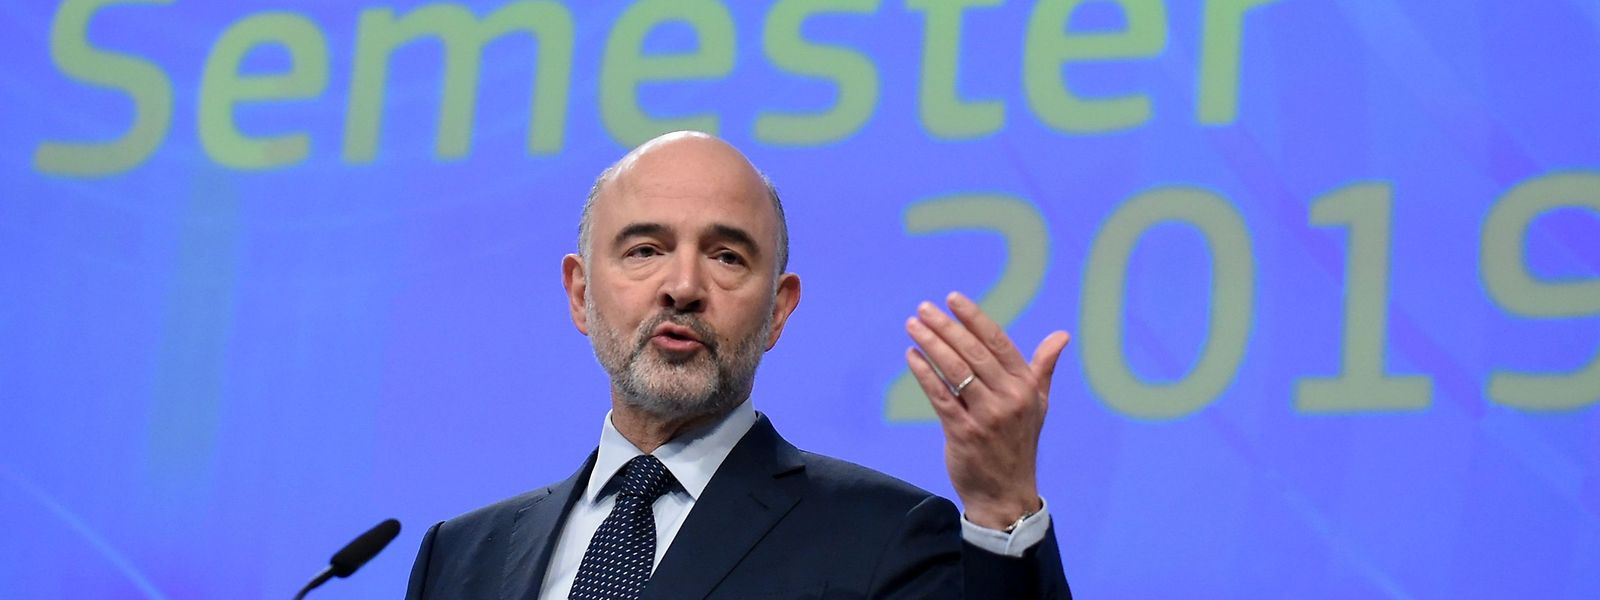 Pierre Moscovici, EU-Wirtschafts- und Finanzkommissar, hat die Analyse zur wirtschaftlichen und sozialen Situation in Luxemburg und den anderen EU-Staaten vorgestellt.